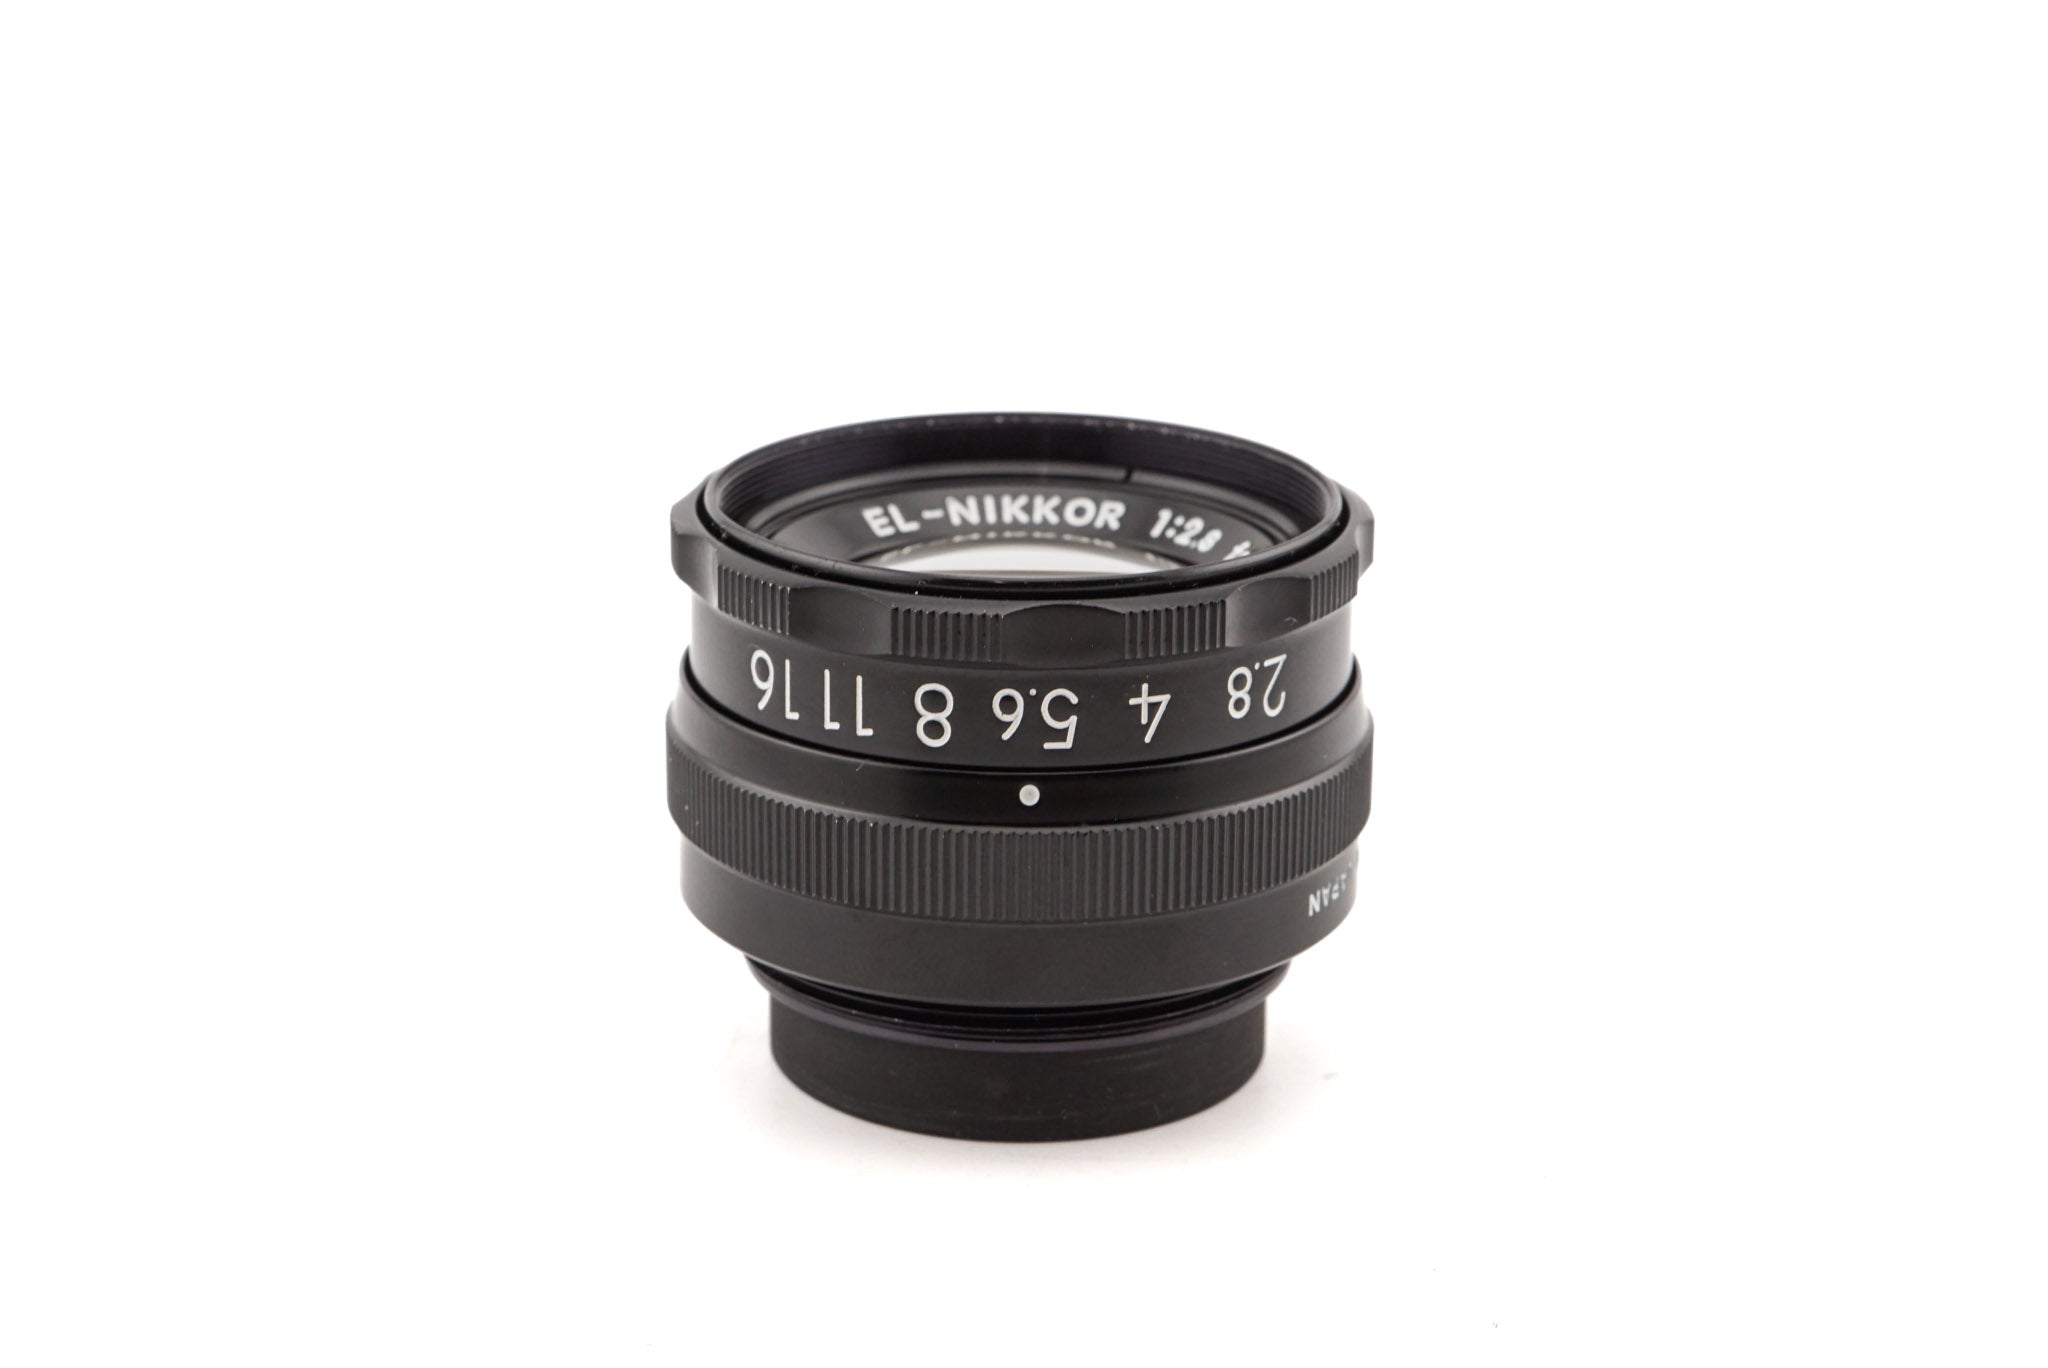 Nikon 50mm f2.8 EL-Nikkor - Lens – Kamerastore